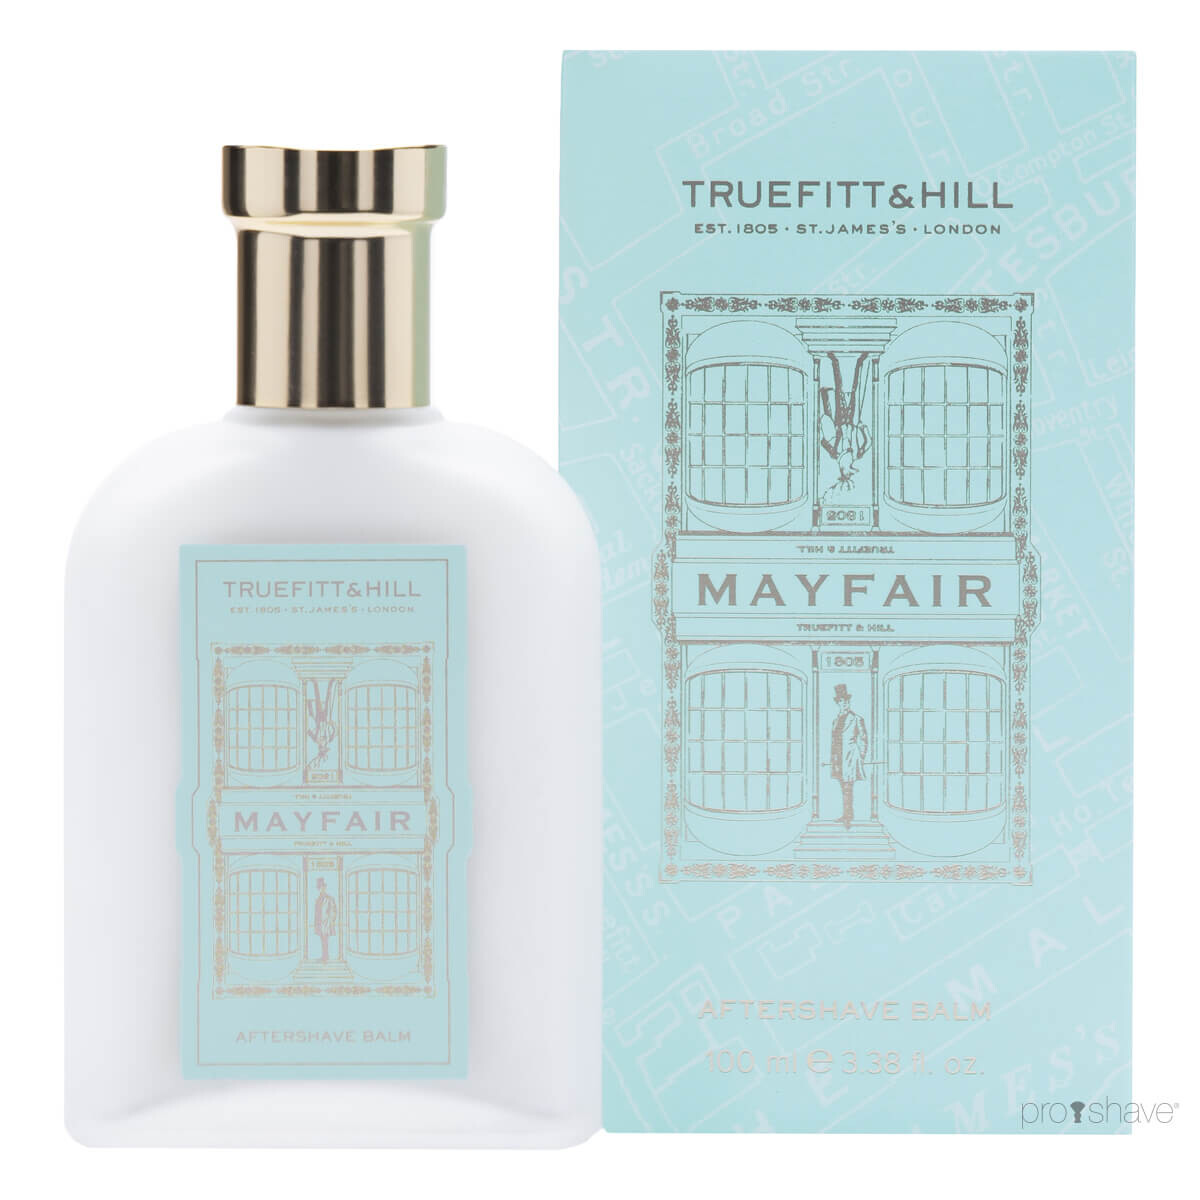 Truefitt & Hill Aftershave Balm, Mayfair, 100 ml.